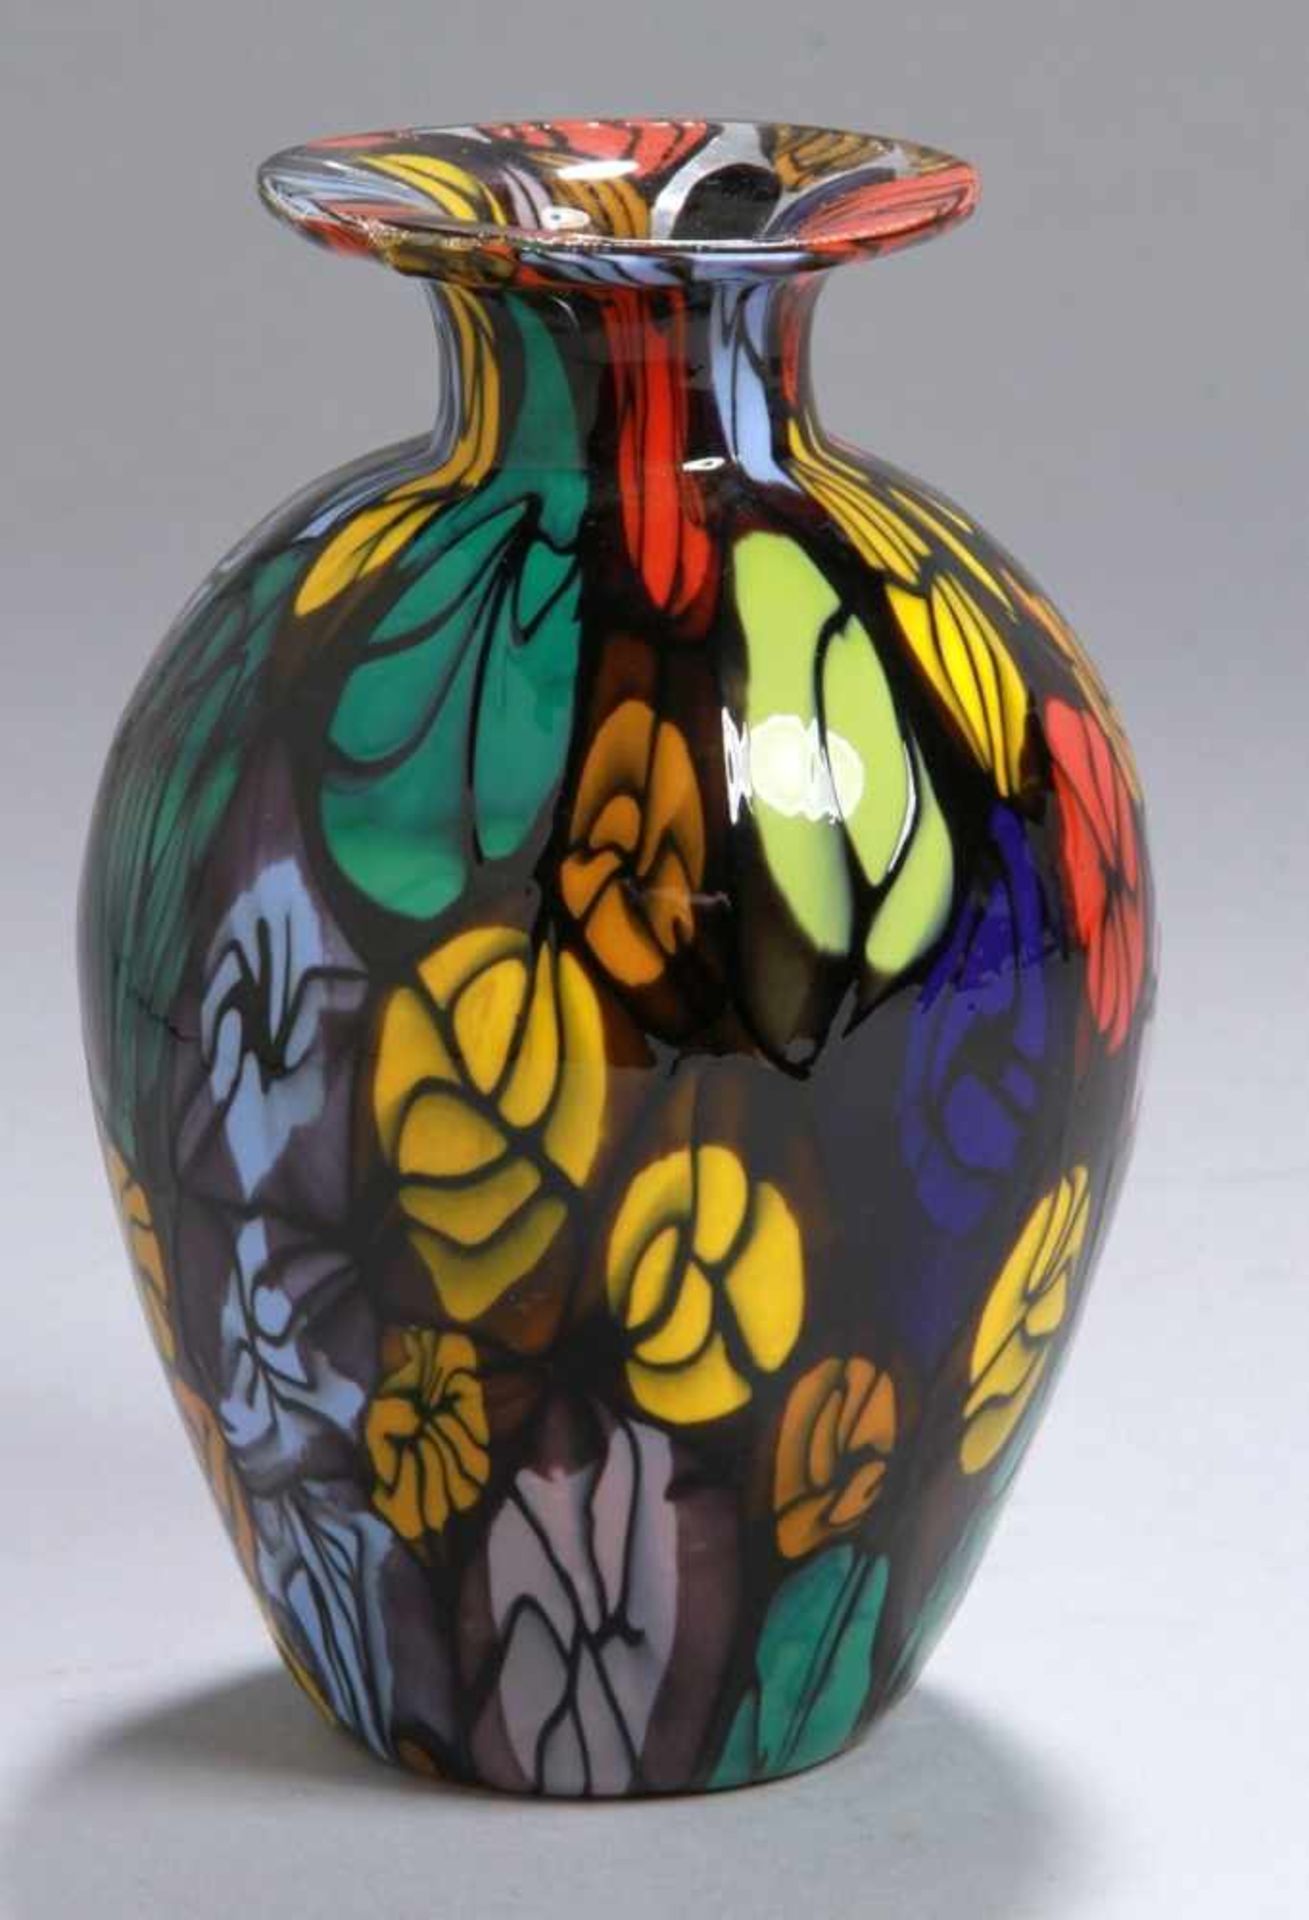 Glas-Ziervase, "Murrine", Murano, neuzeitlich, farbloses Glas, dekoriert mit nahezuflächendeckenden,